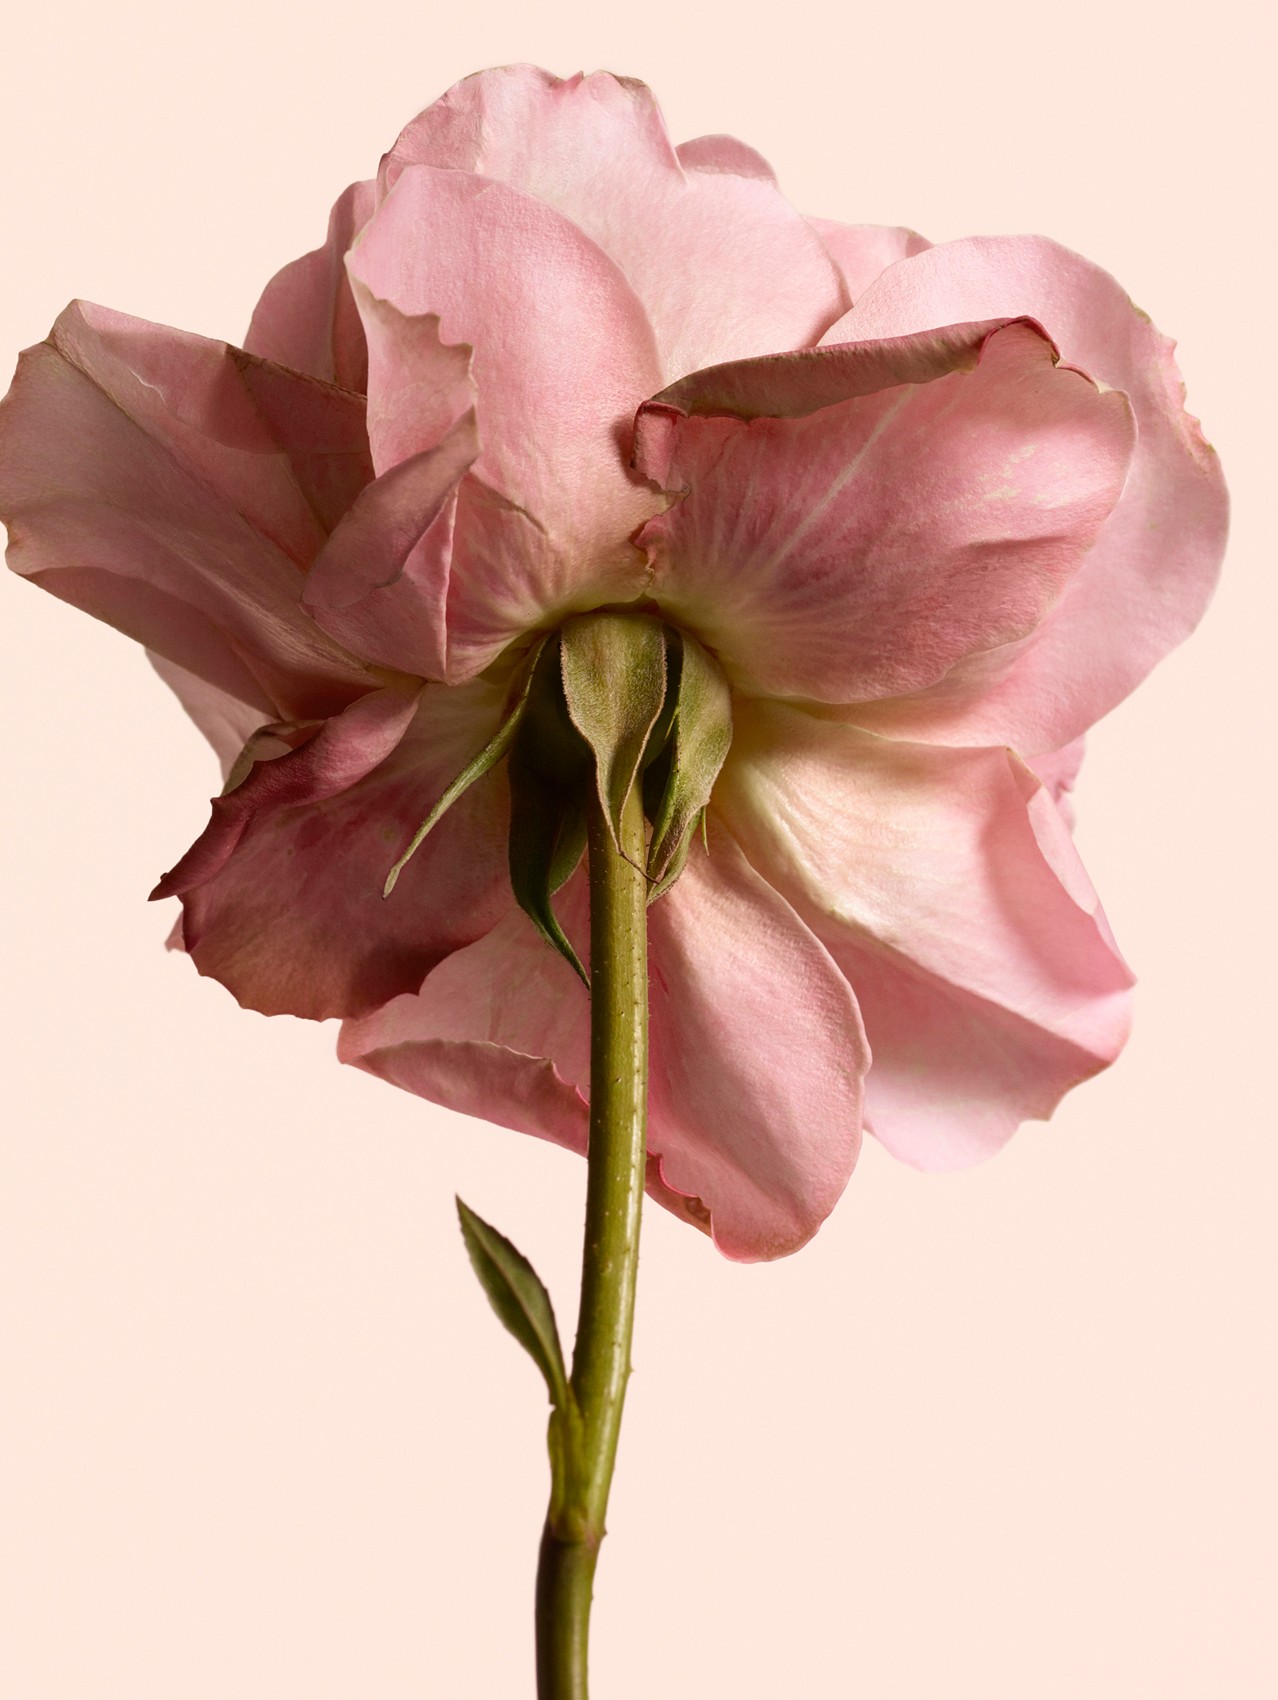 Burberry Signatures Eau de Parfum de 100 ml - Tudor Rose